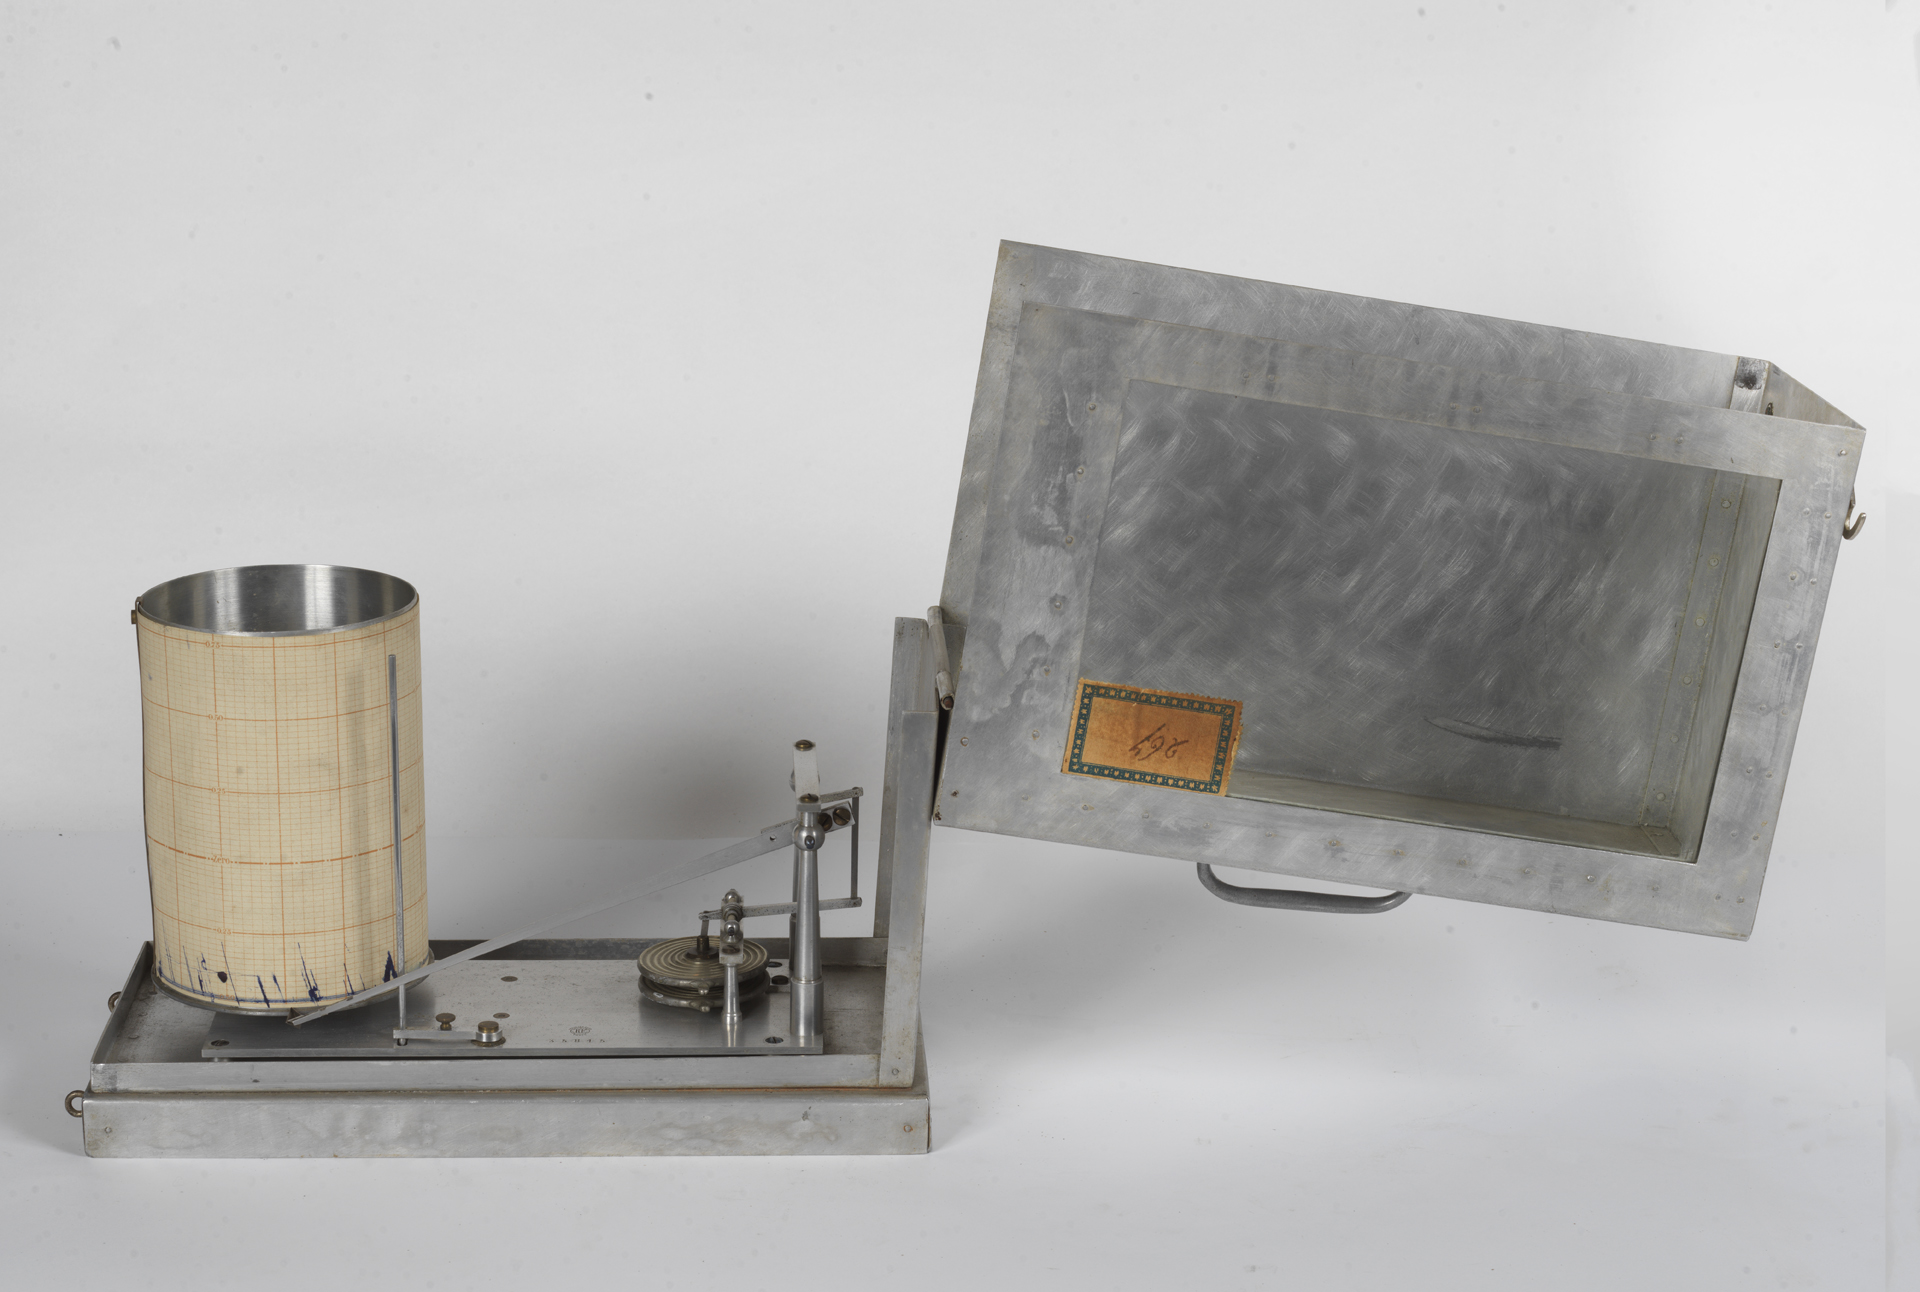 altimetro, registratore - ambito italiano (fine/ inizio sec. XIX/ XX)